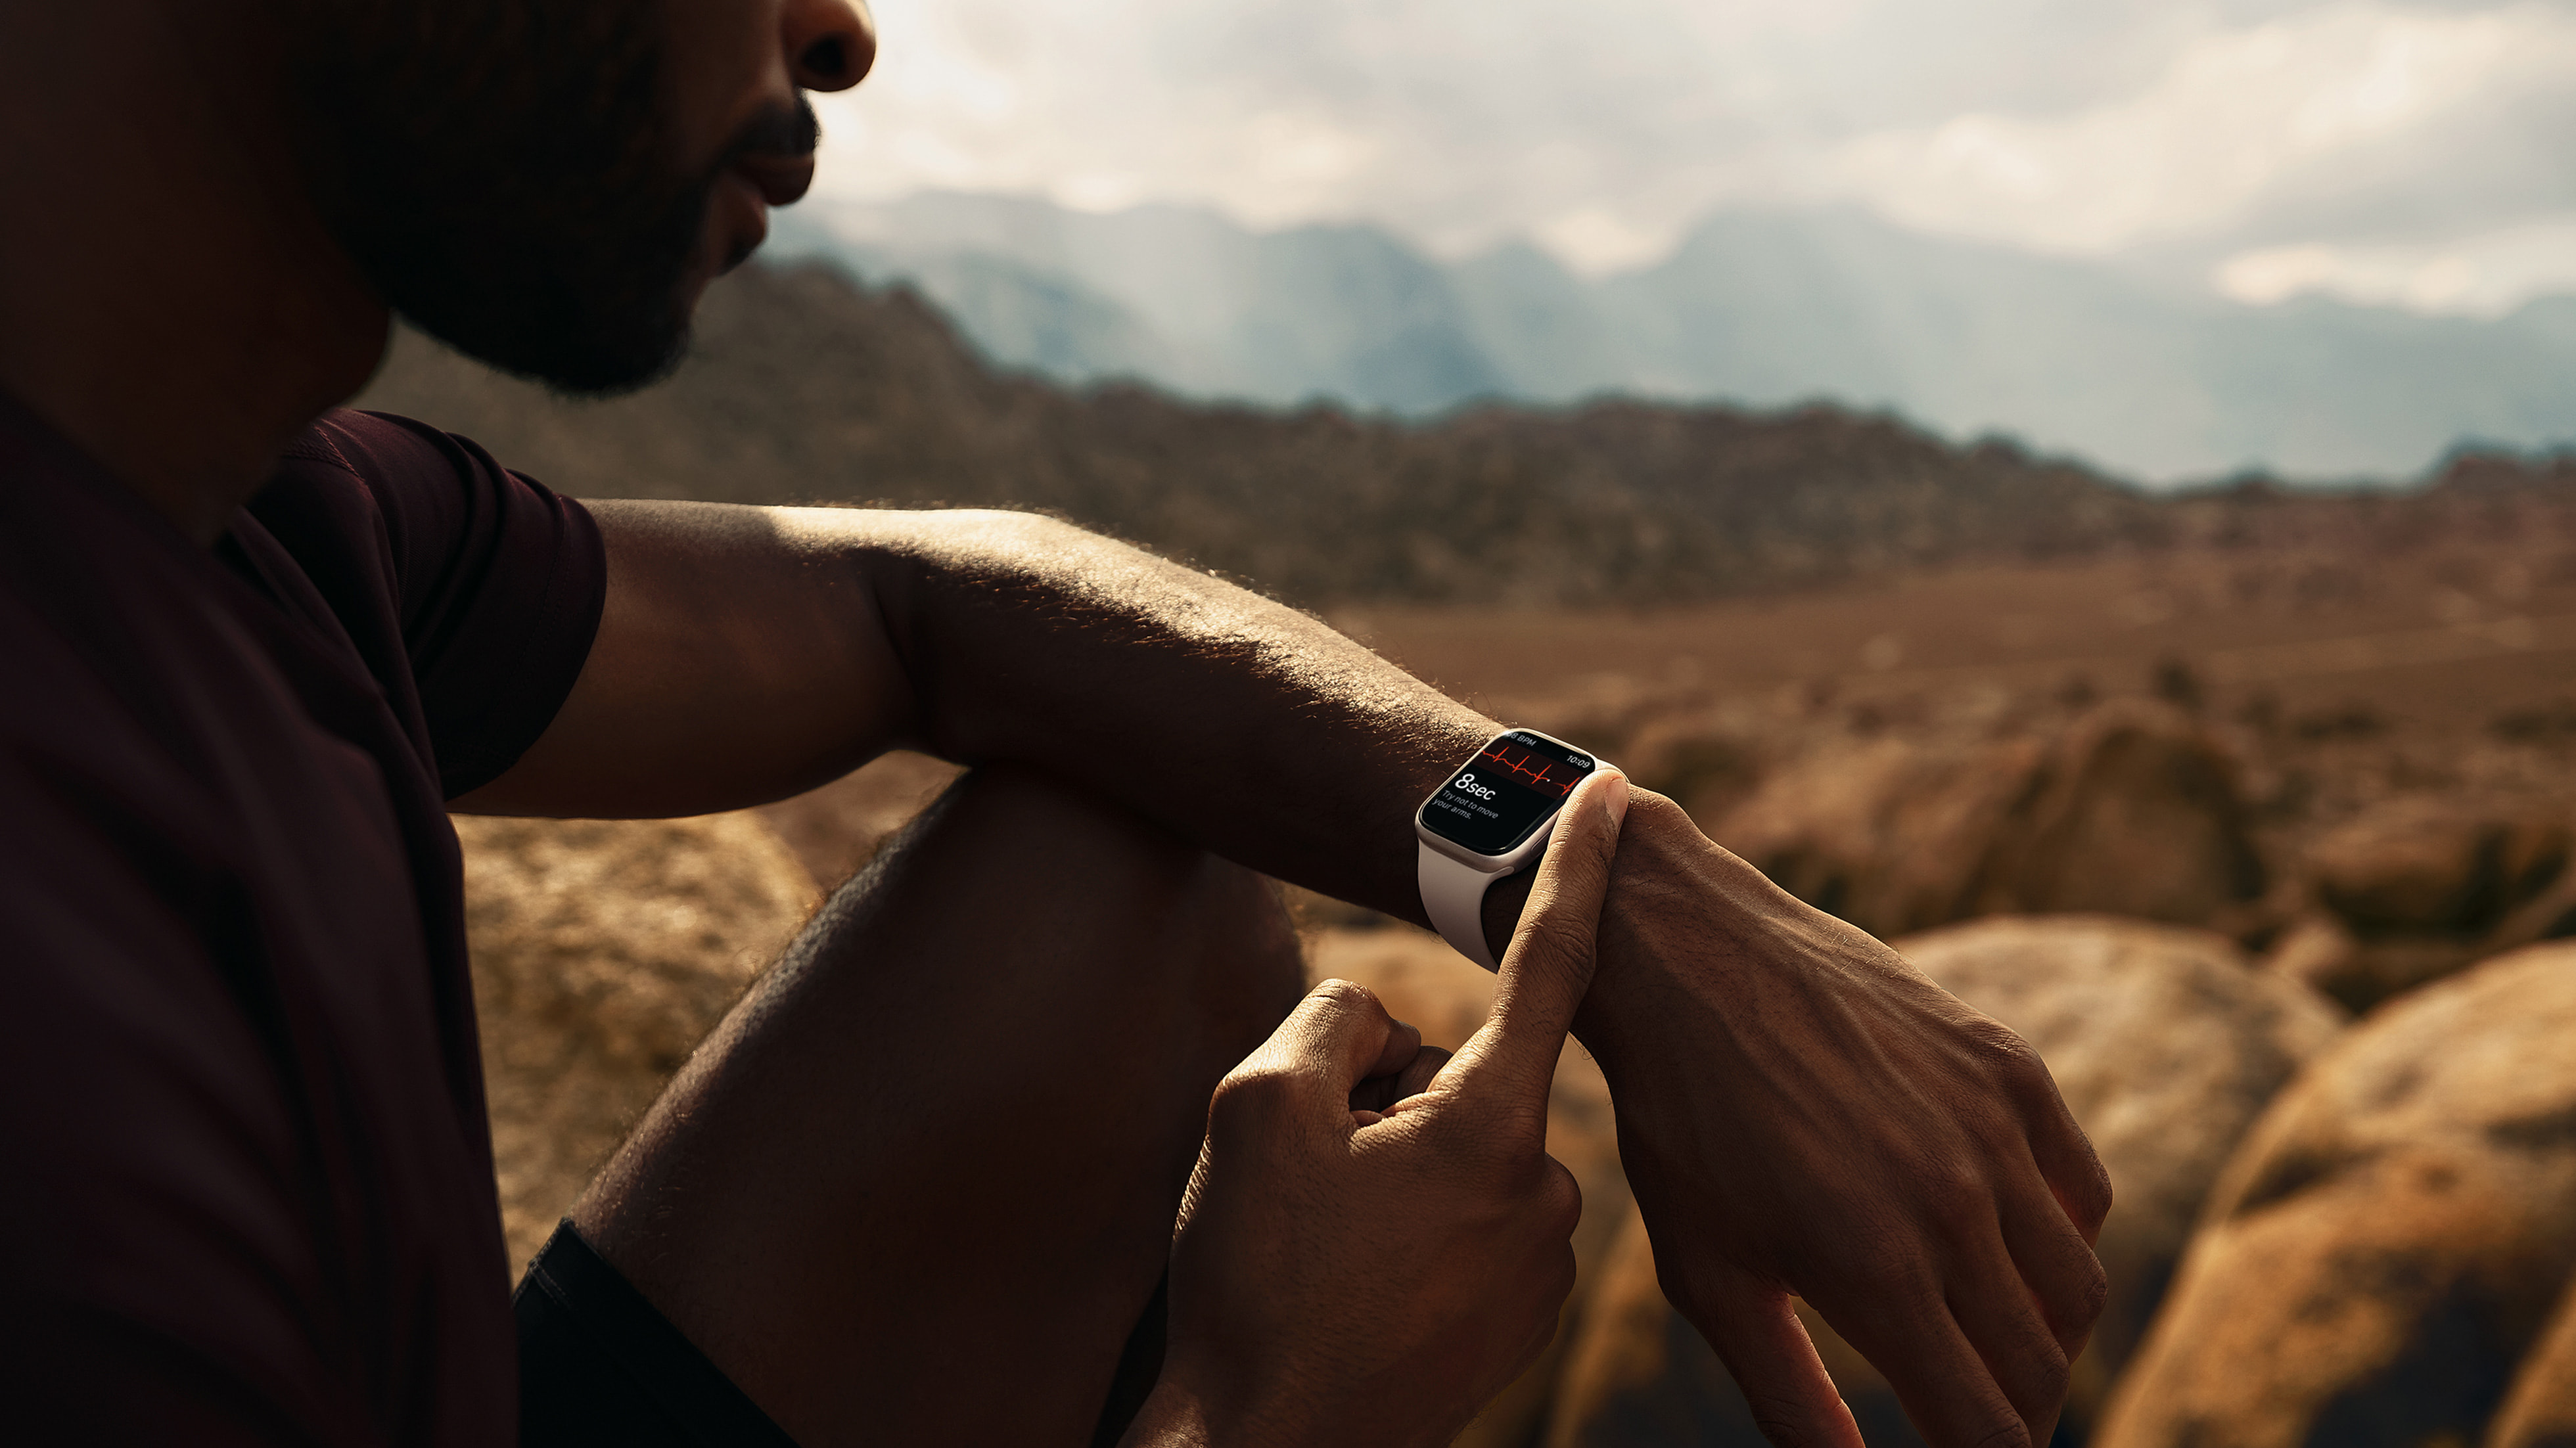 Prémiové chytré hodinky Apple Watch Series 7 vás inspirují ke zdravějšímu životnímu stylu.